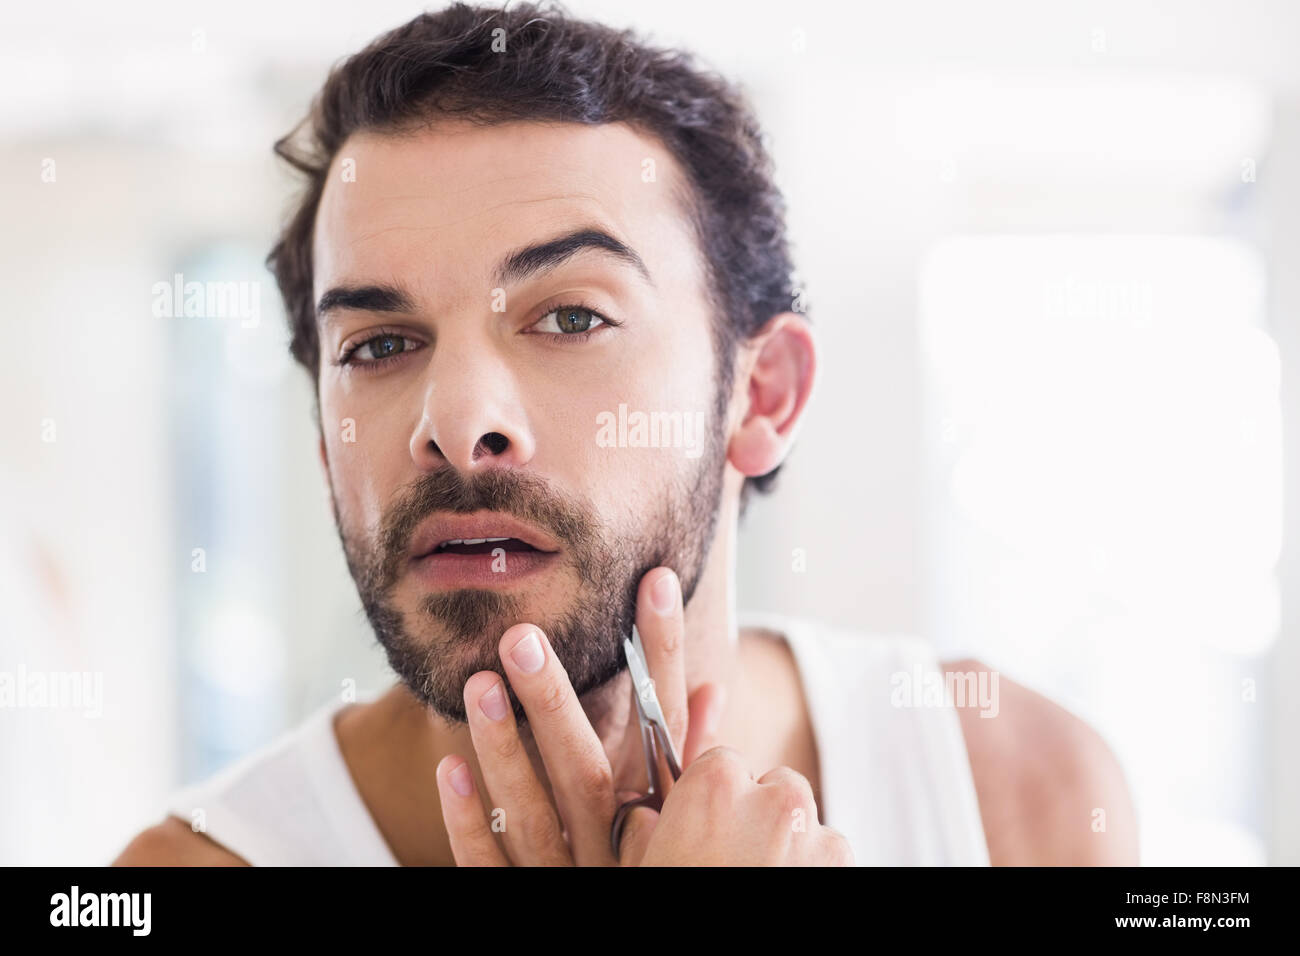 Concentra el hombre cortando su barba con tijeras Foto de stock